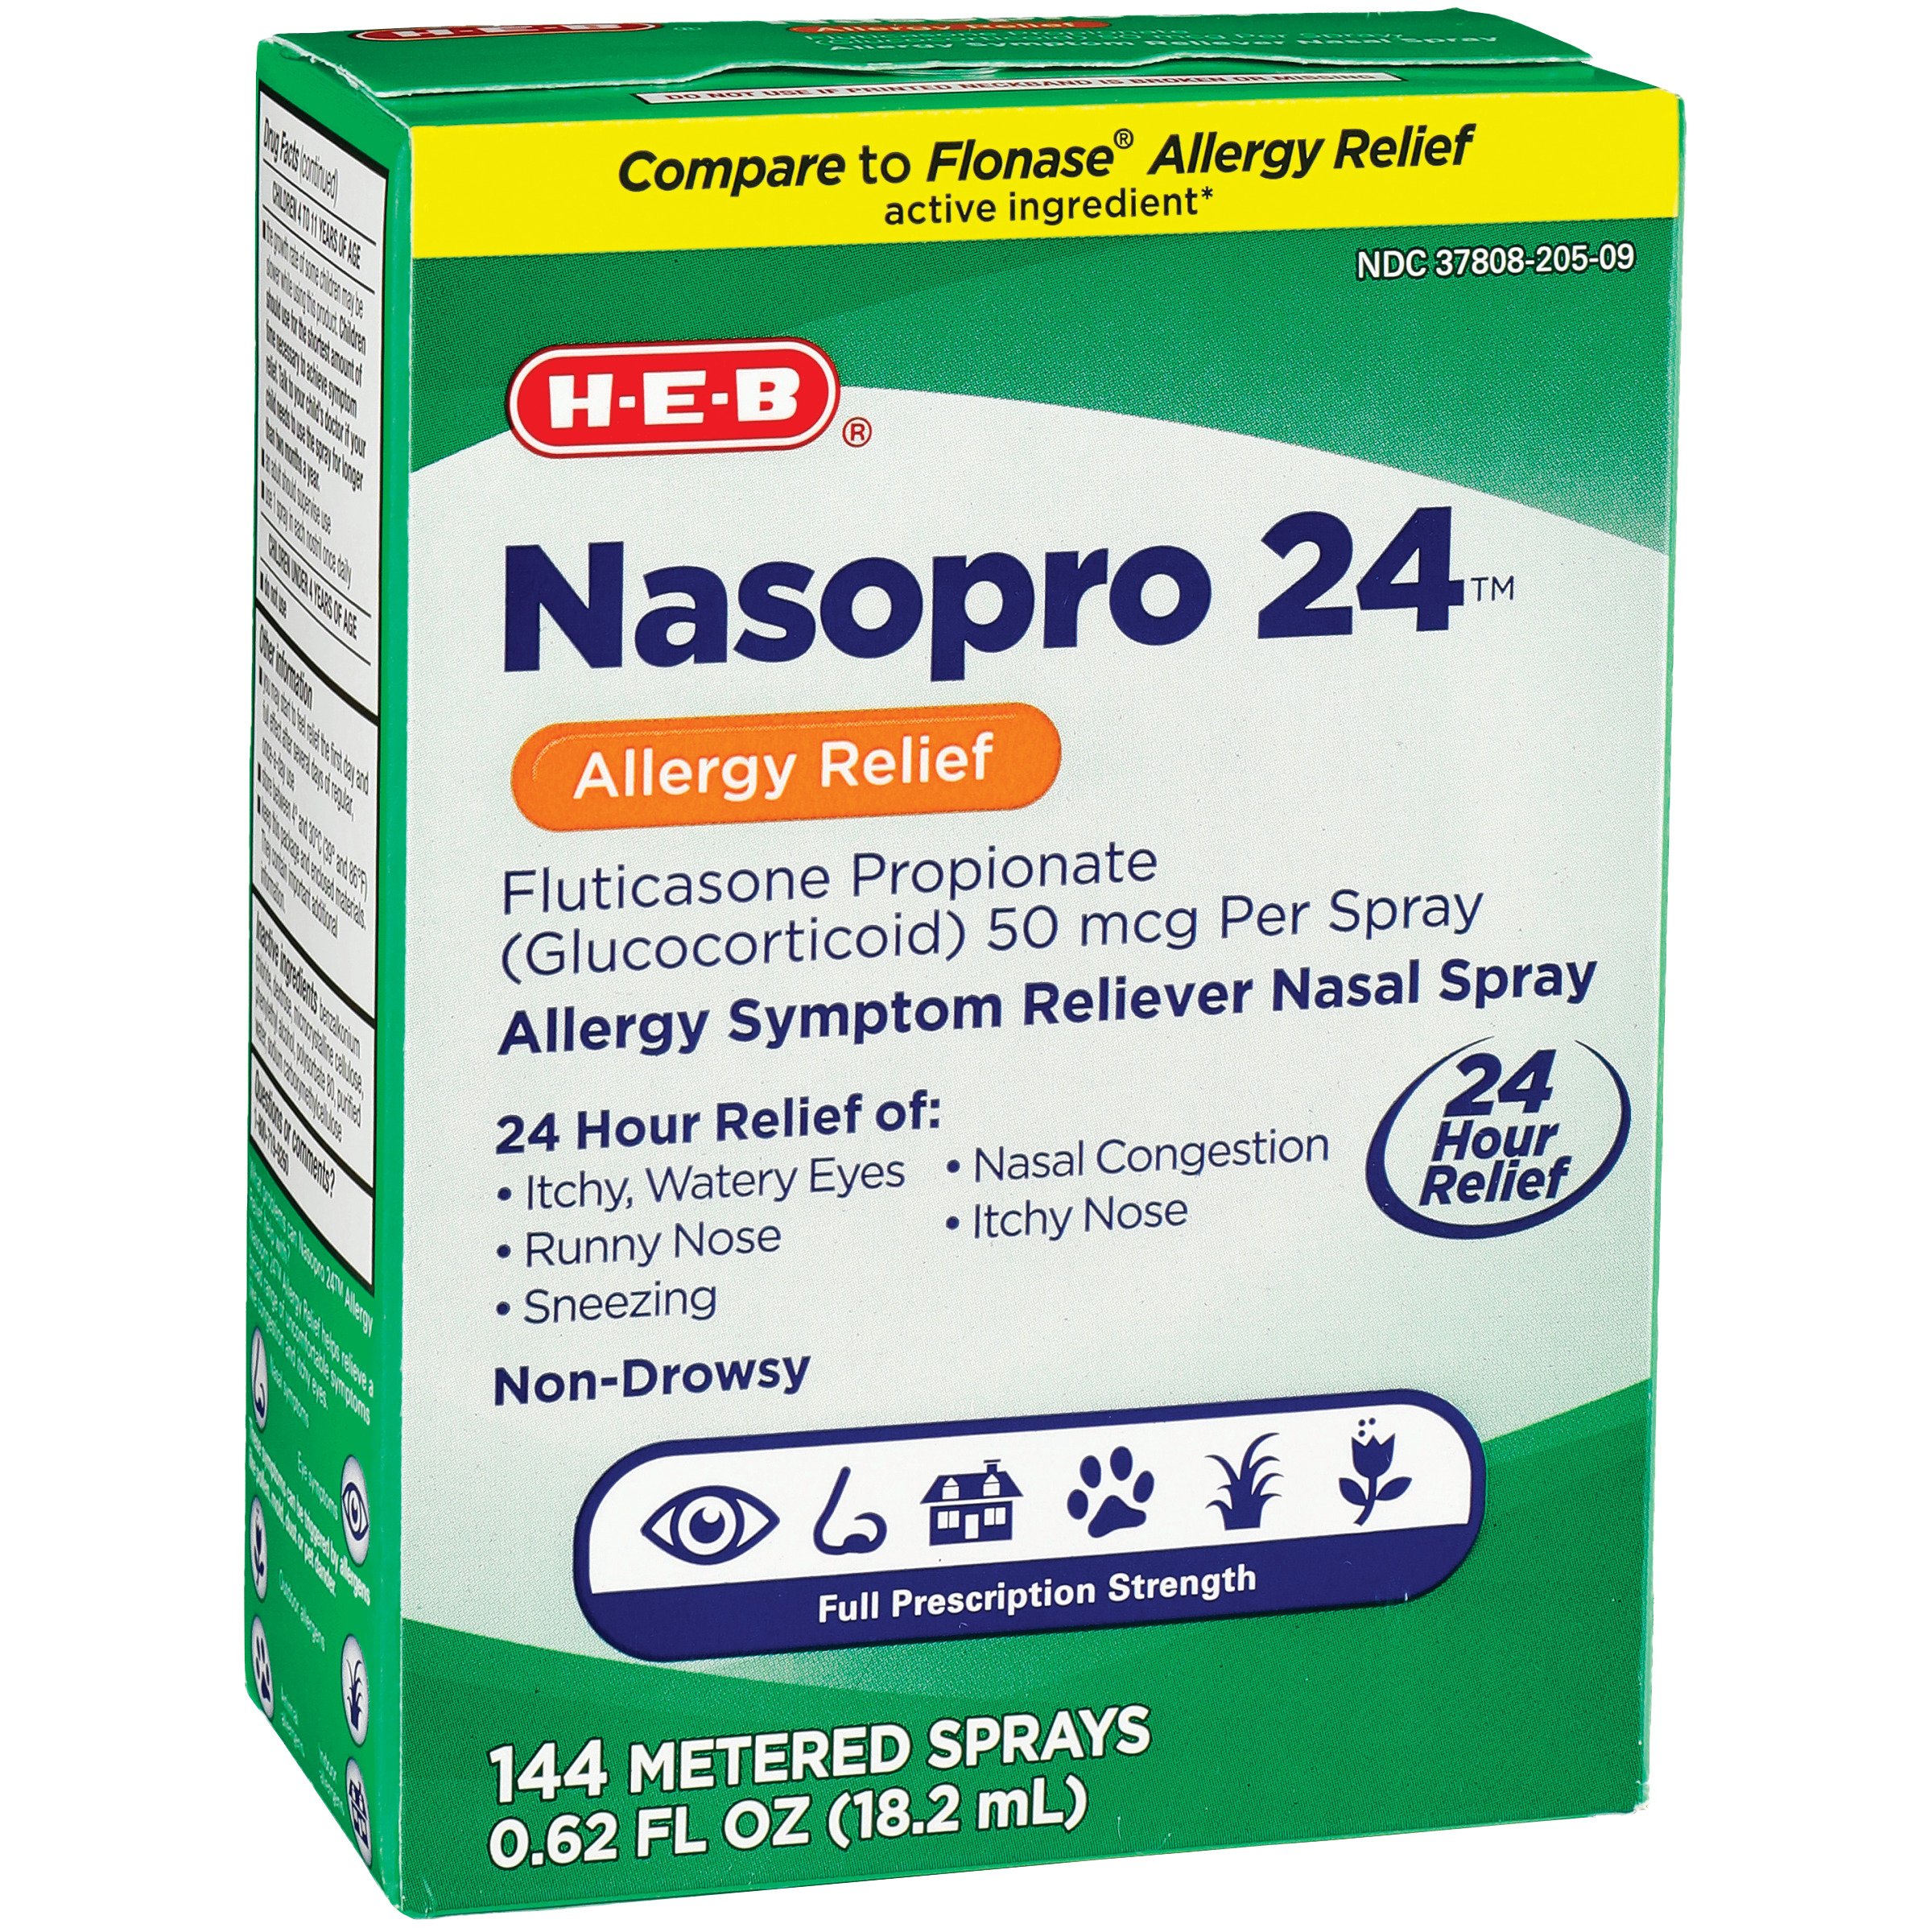 nasal spray prescription brands